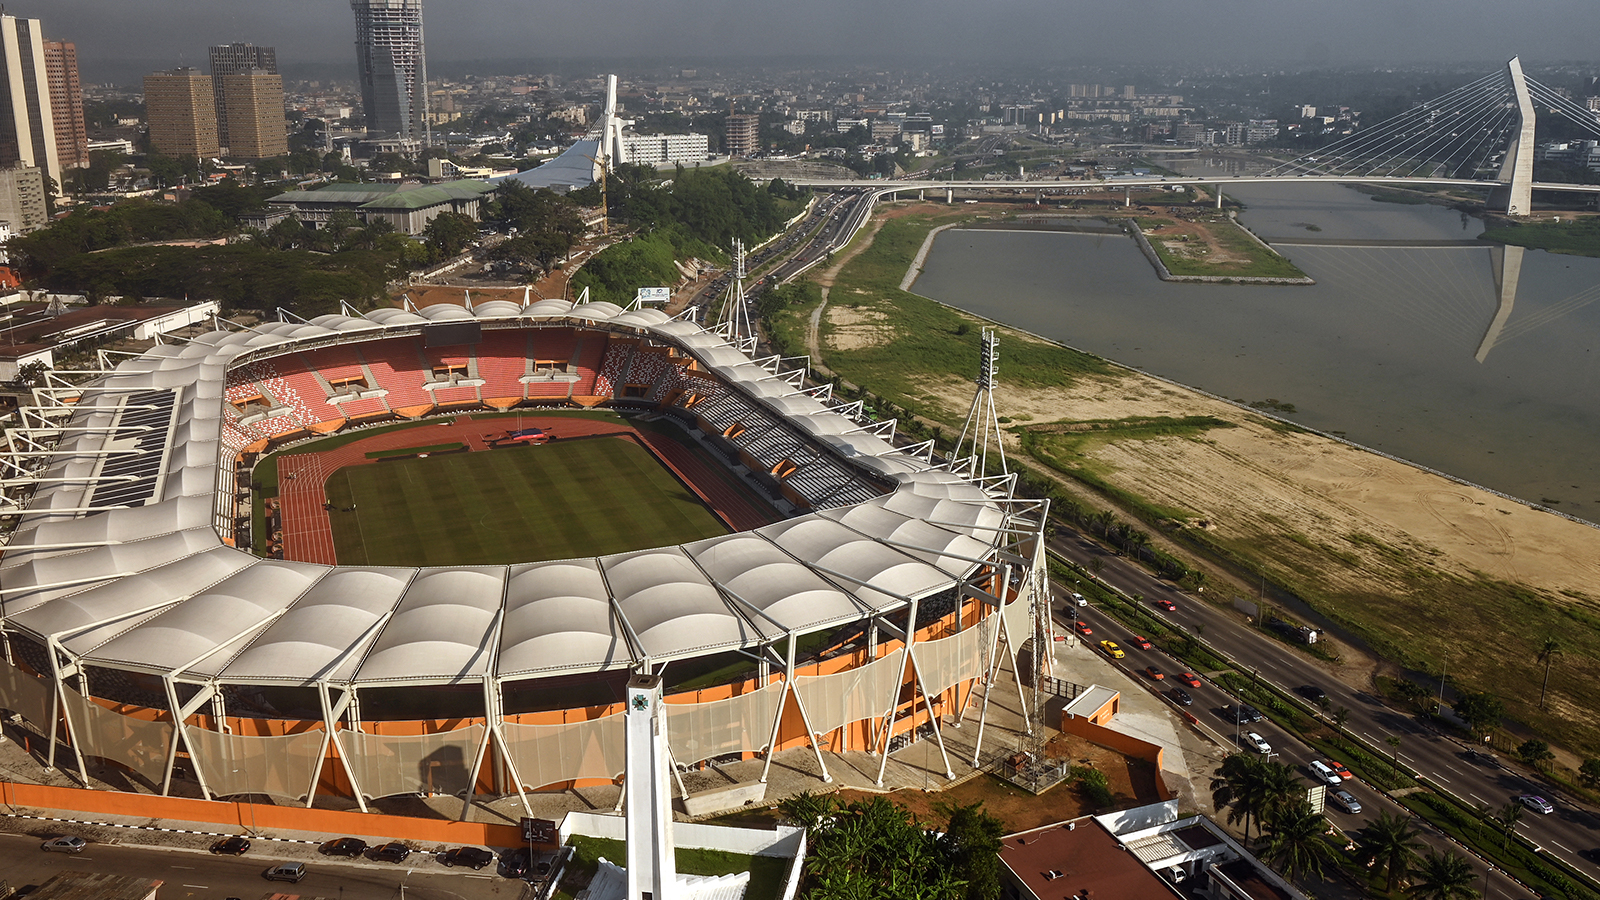 Felix Houphouet Boigny Stadium Abidjan